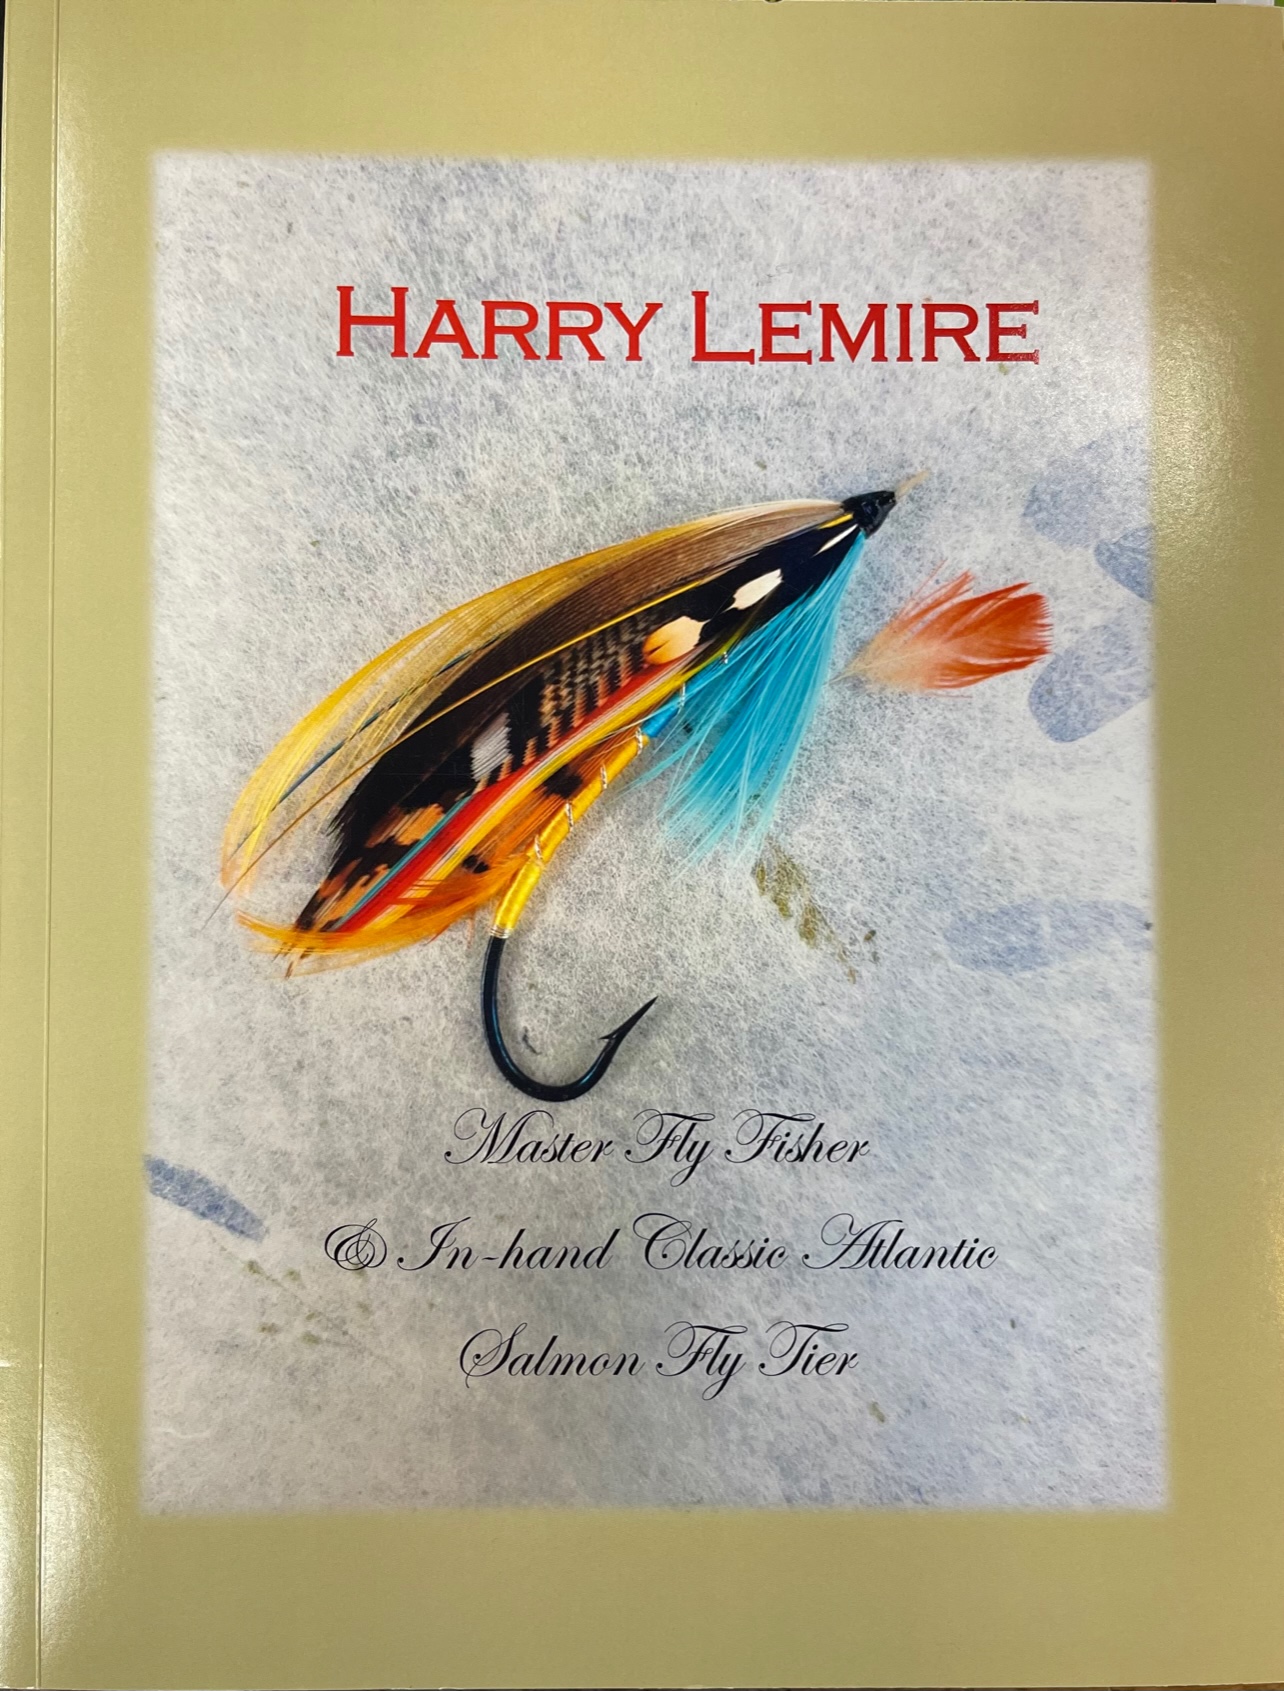 Misc Harry Lemire